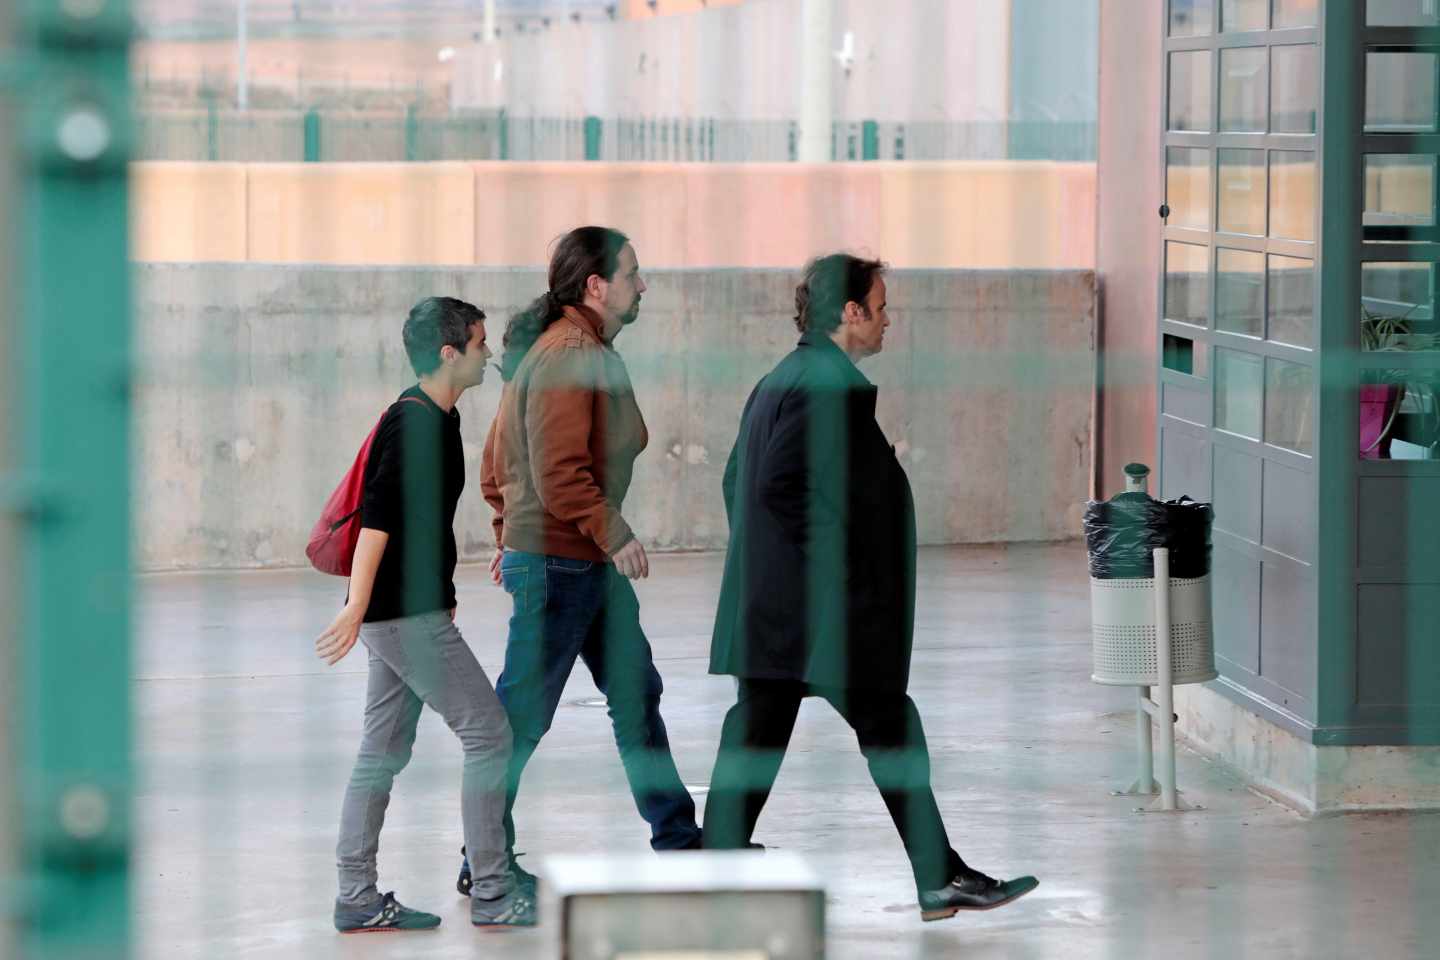 Pablo Iglesias, Lucía Martinez y Jaume Asens entrando en la prisión de Lledoners para reunirse con Oriol Junqueras.